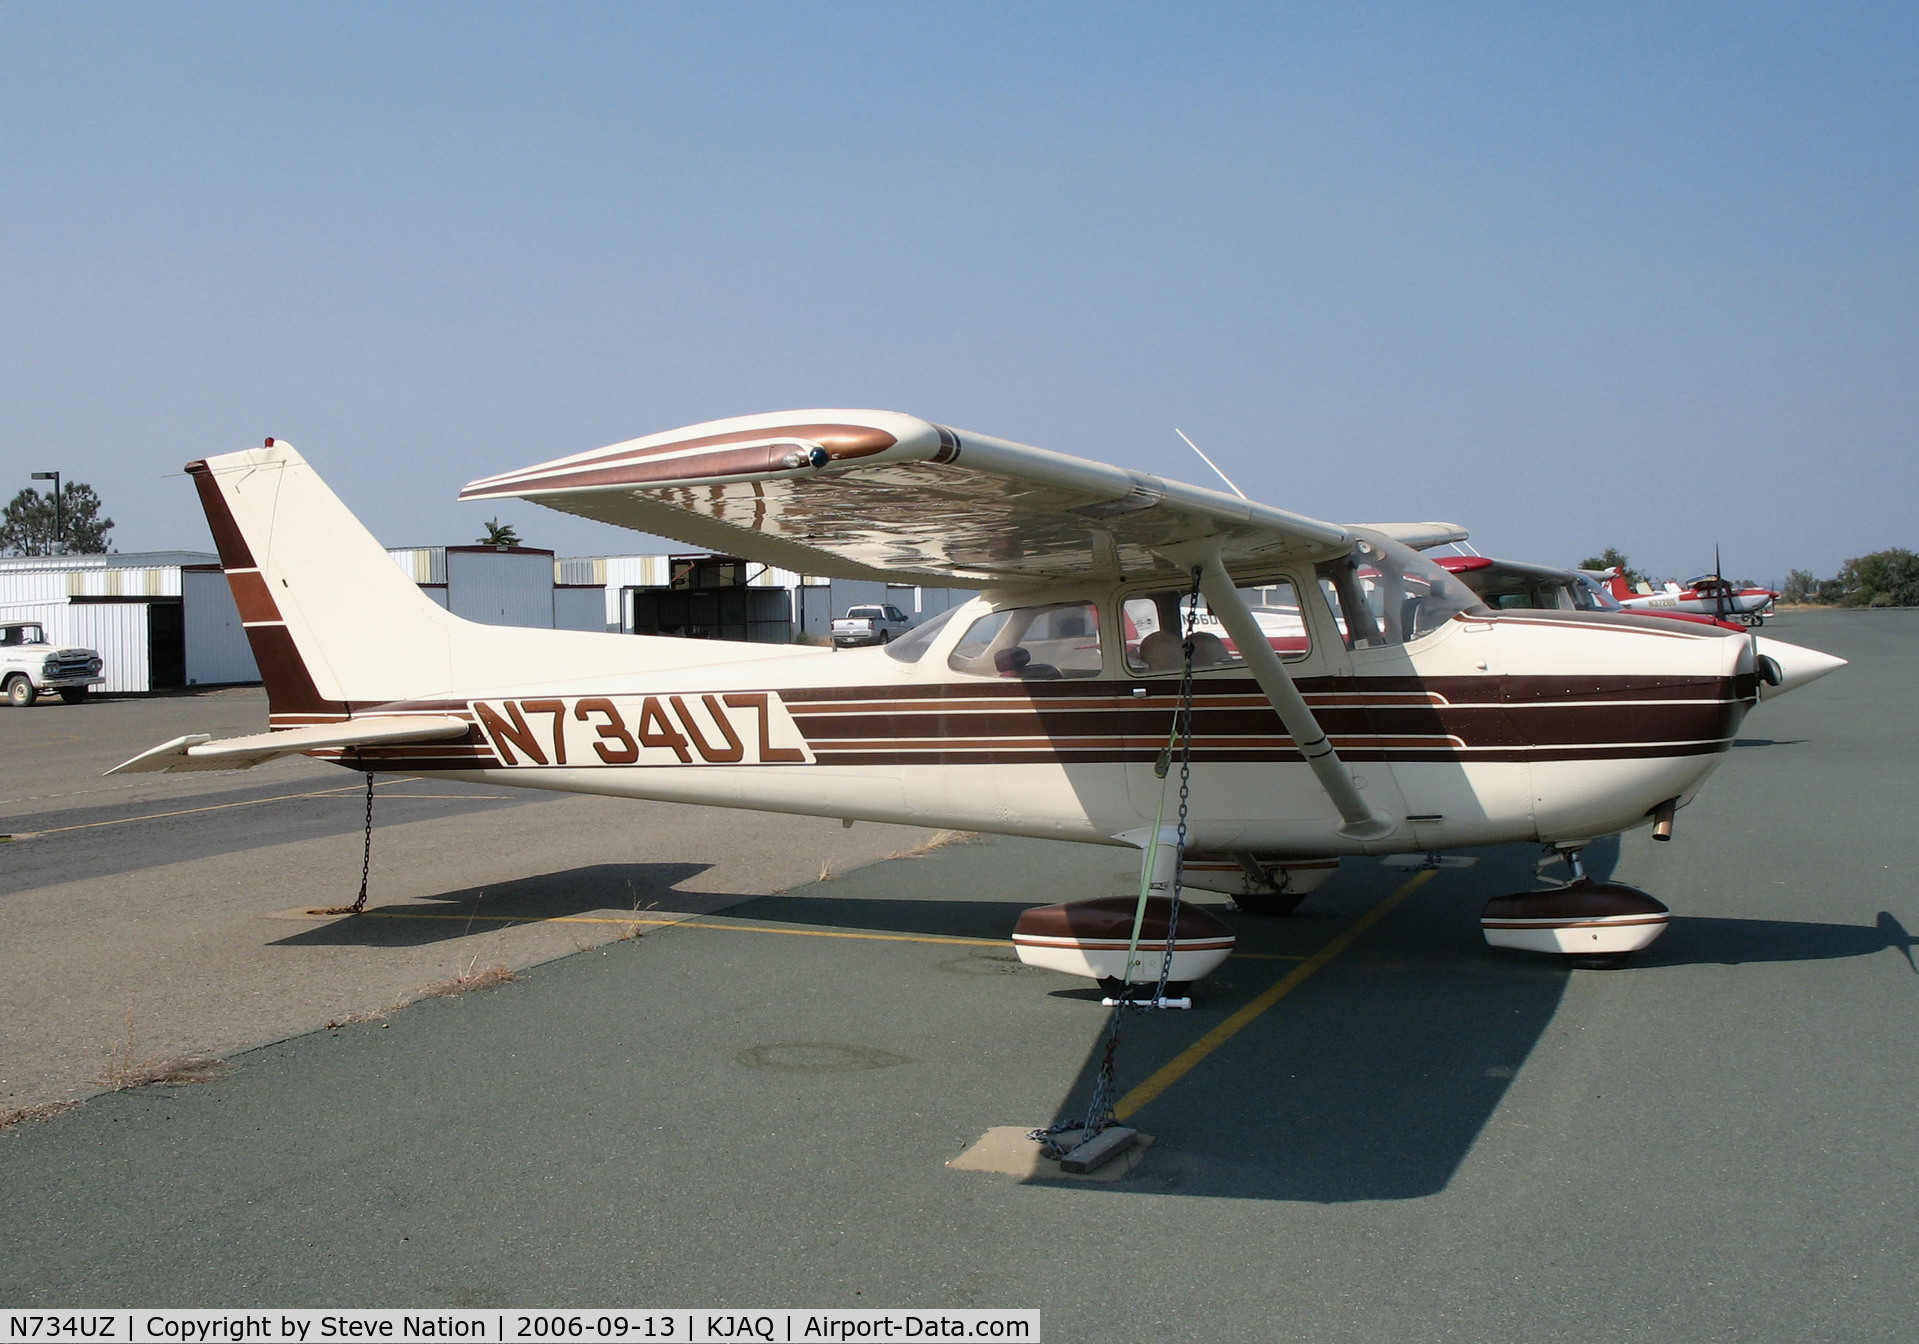 N734UZ, 1977 Cessna 172N C/N 17269137, Locally-based 1977 Cessna 172N Skyhawk @ Westover Field/Amador County Airport, Jackson, CA